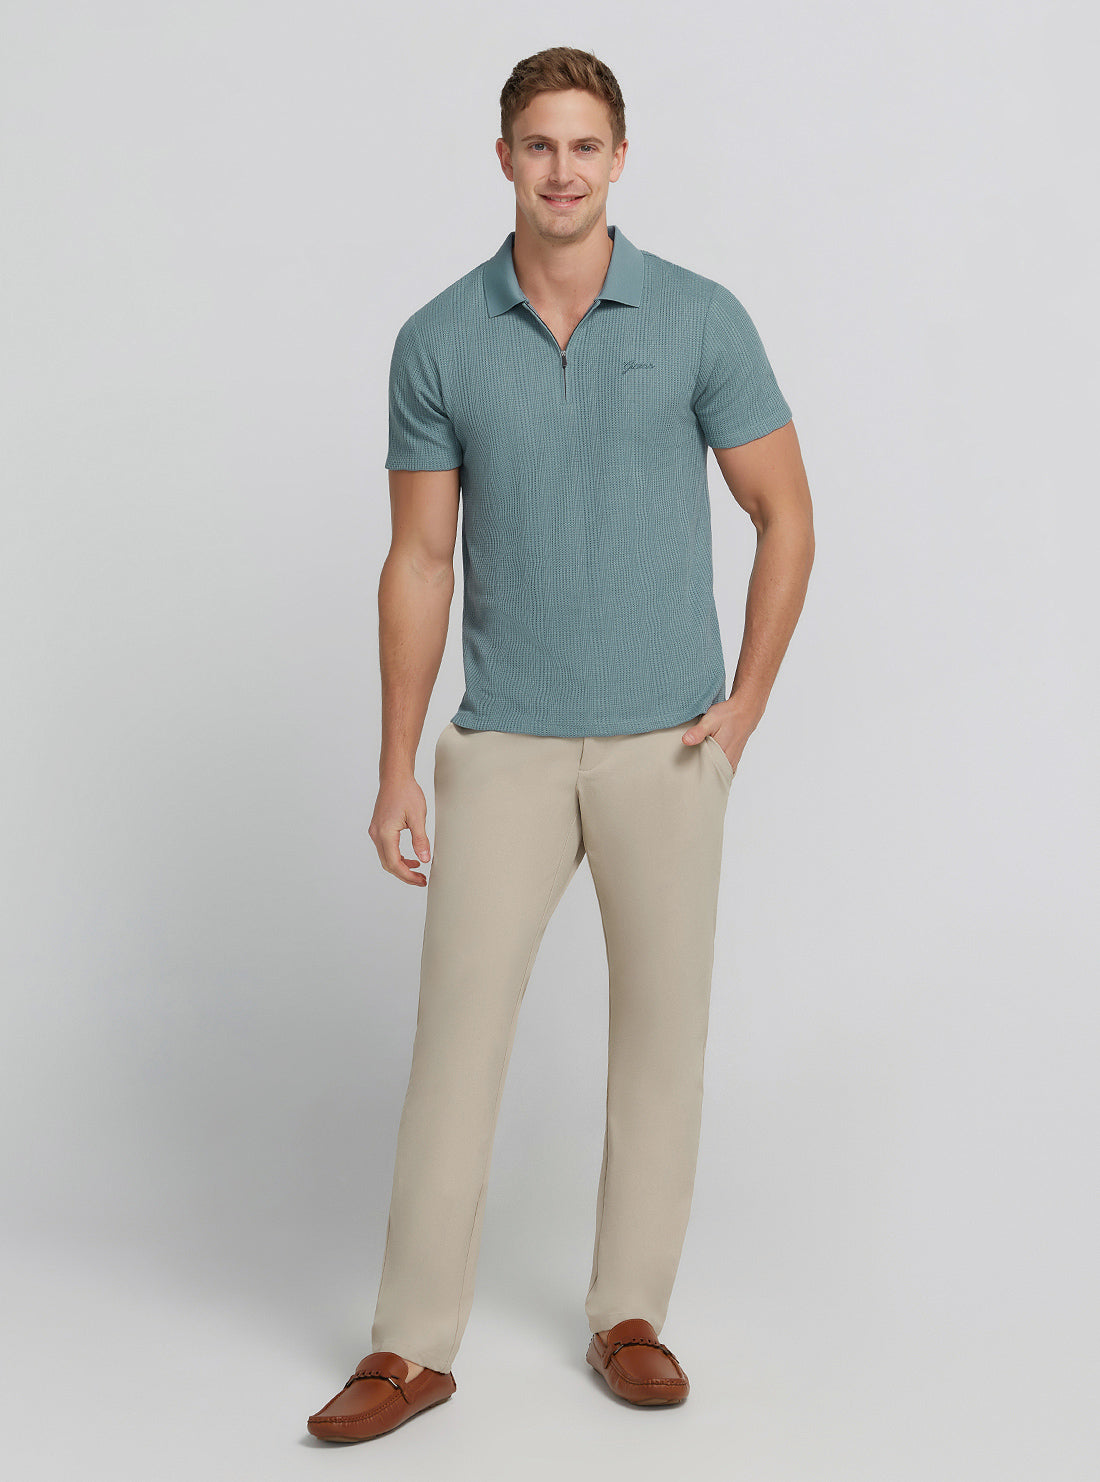 Blue Joshua Knit Shirt | GUESS Men's | Full view